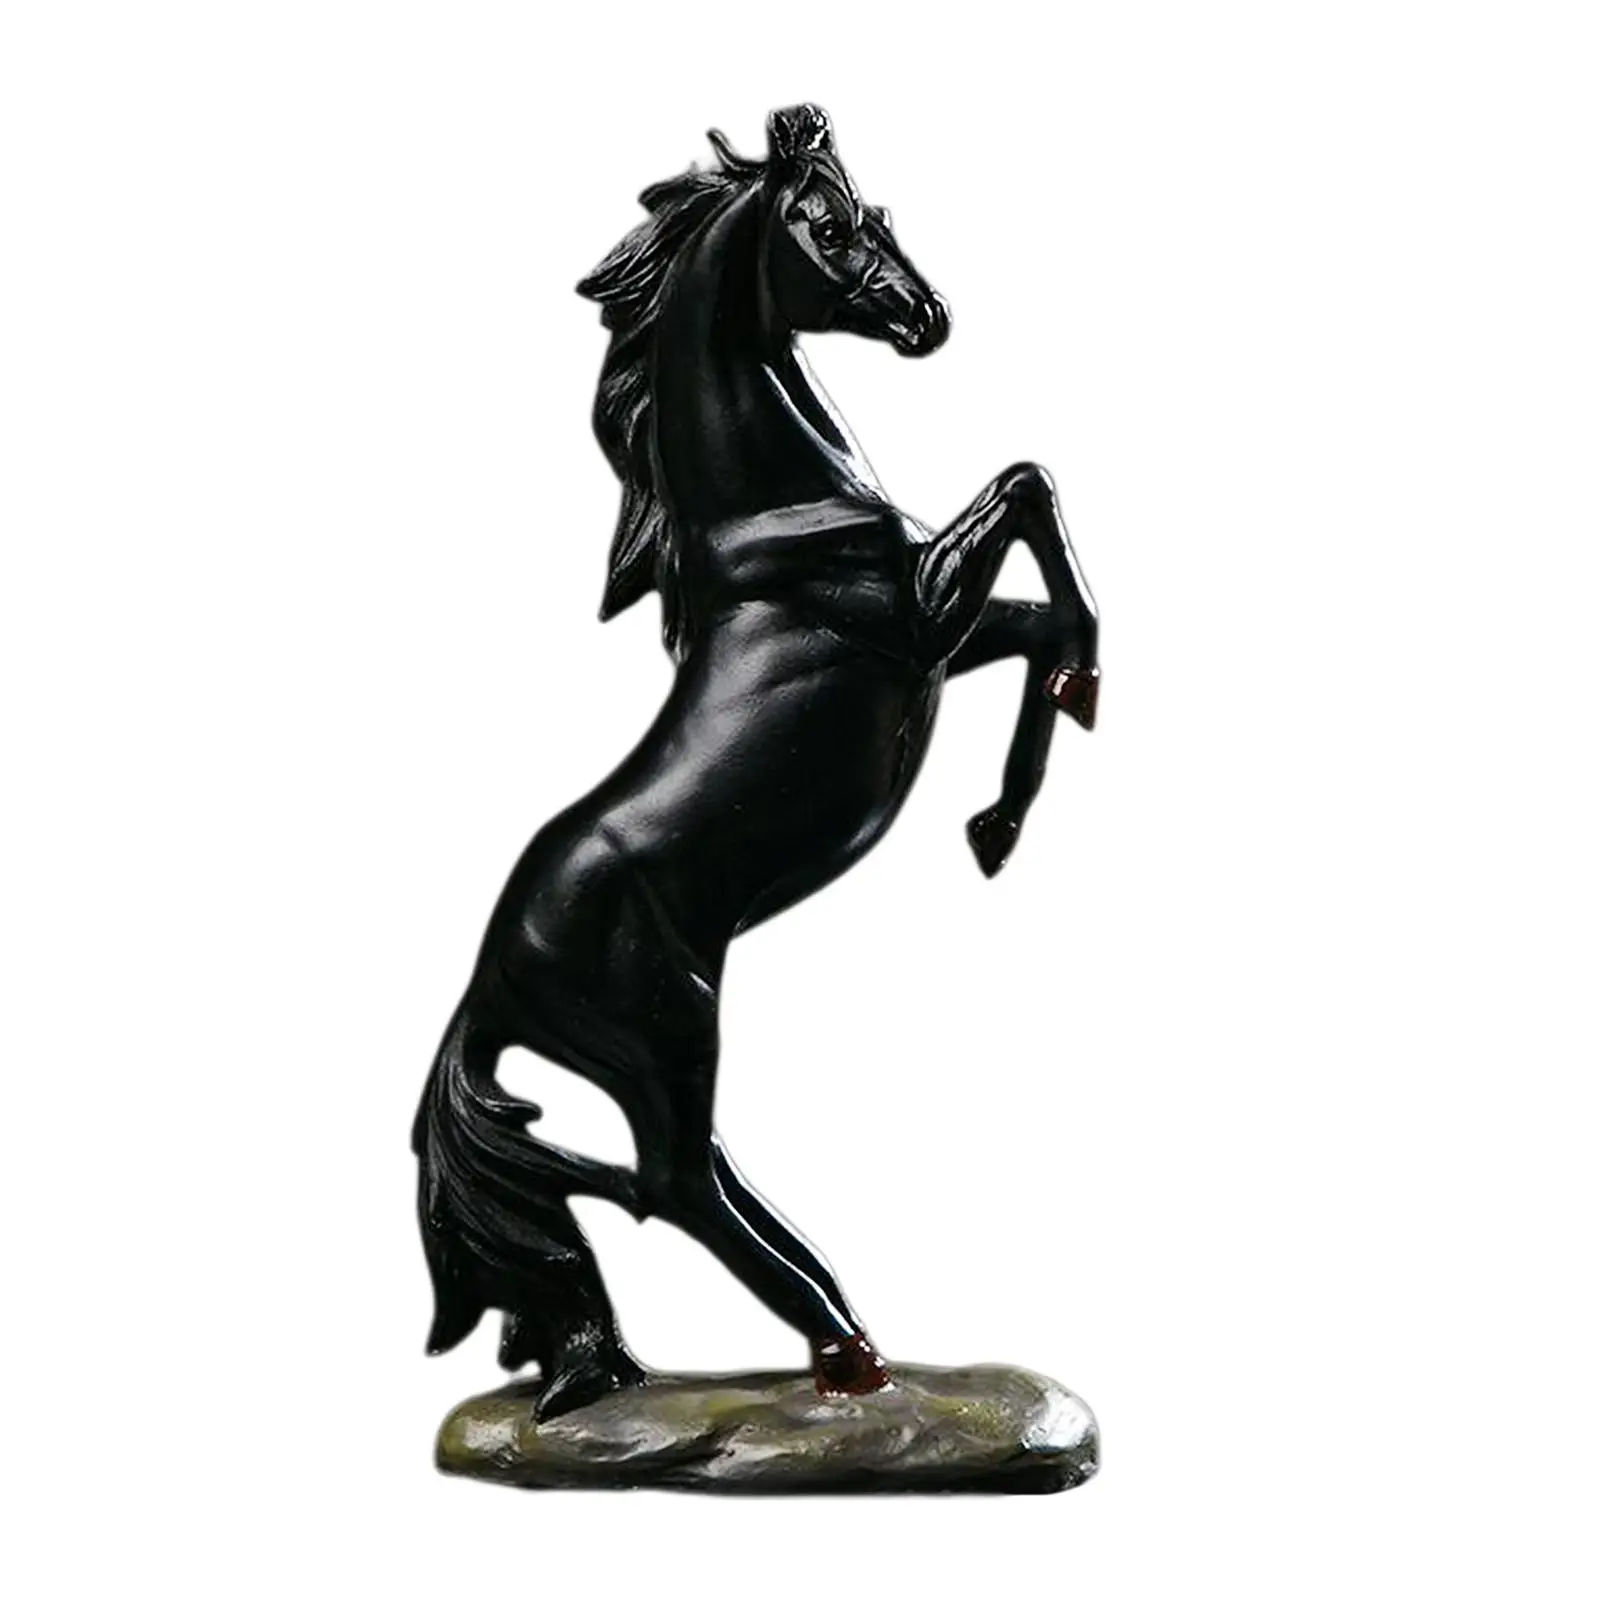 2x Vivid Horses Figurine Desktop Sculpture Shop Bar Ornaments Bookcase Gift